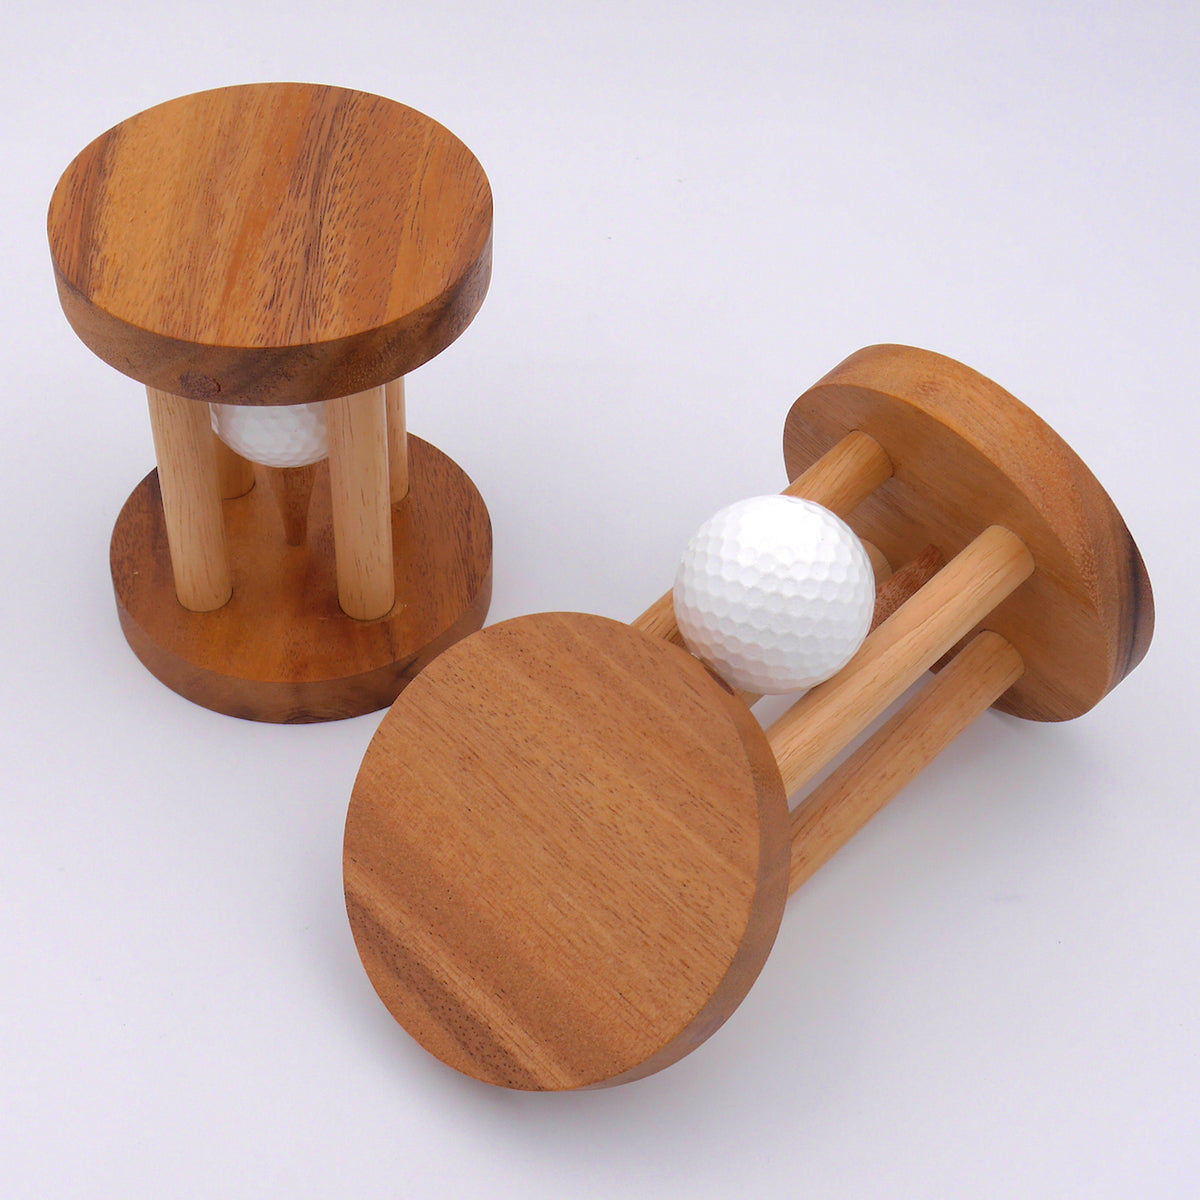 Ein Golfergeschenk, das als Dekoration und als praktisches Zubehör für Golfliebhaber dient.